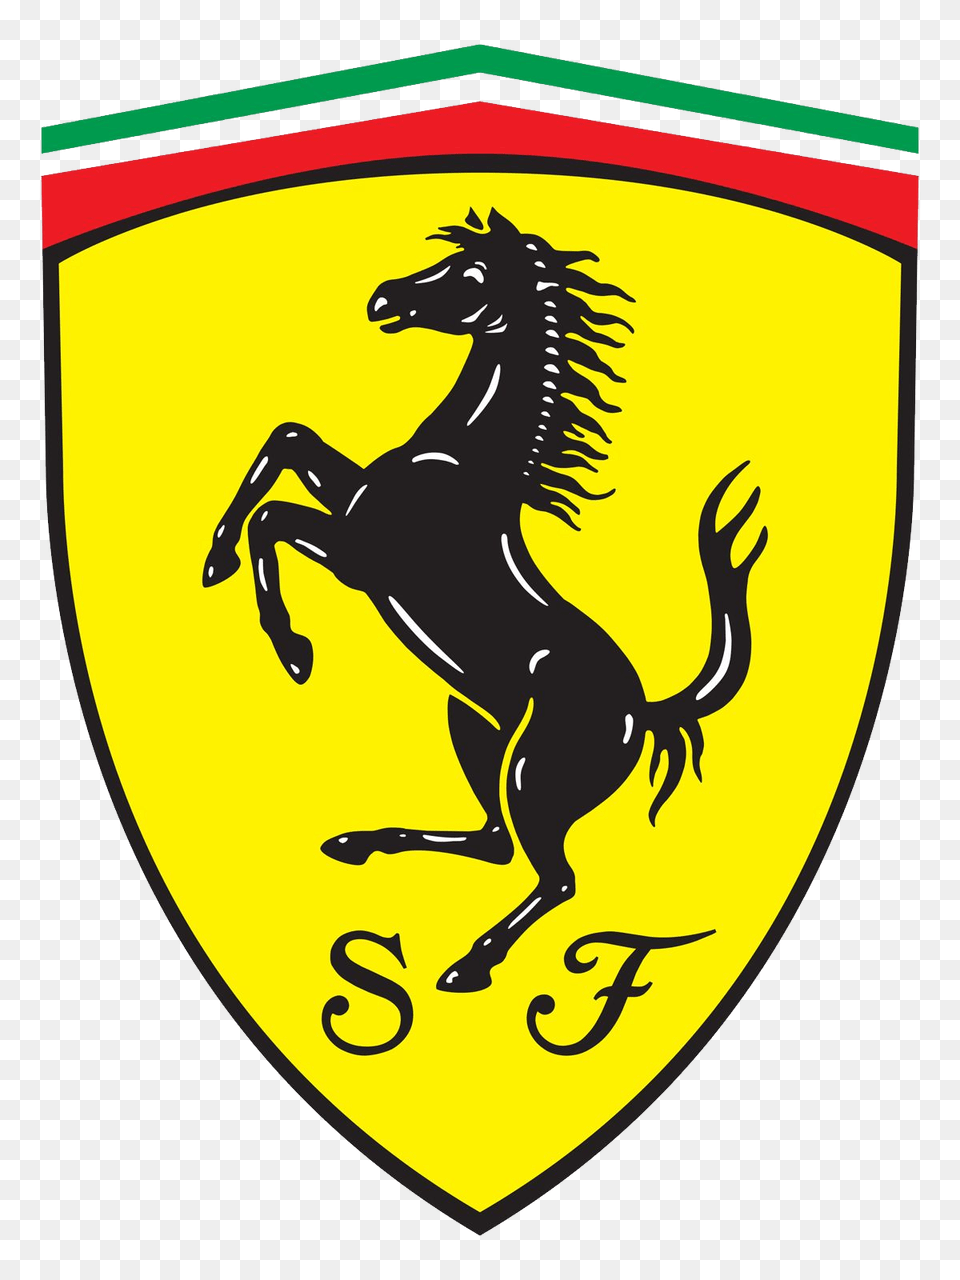 Ferrari Logo Image, Armor, Emblem, Symbol, Person Png